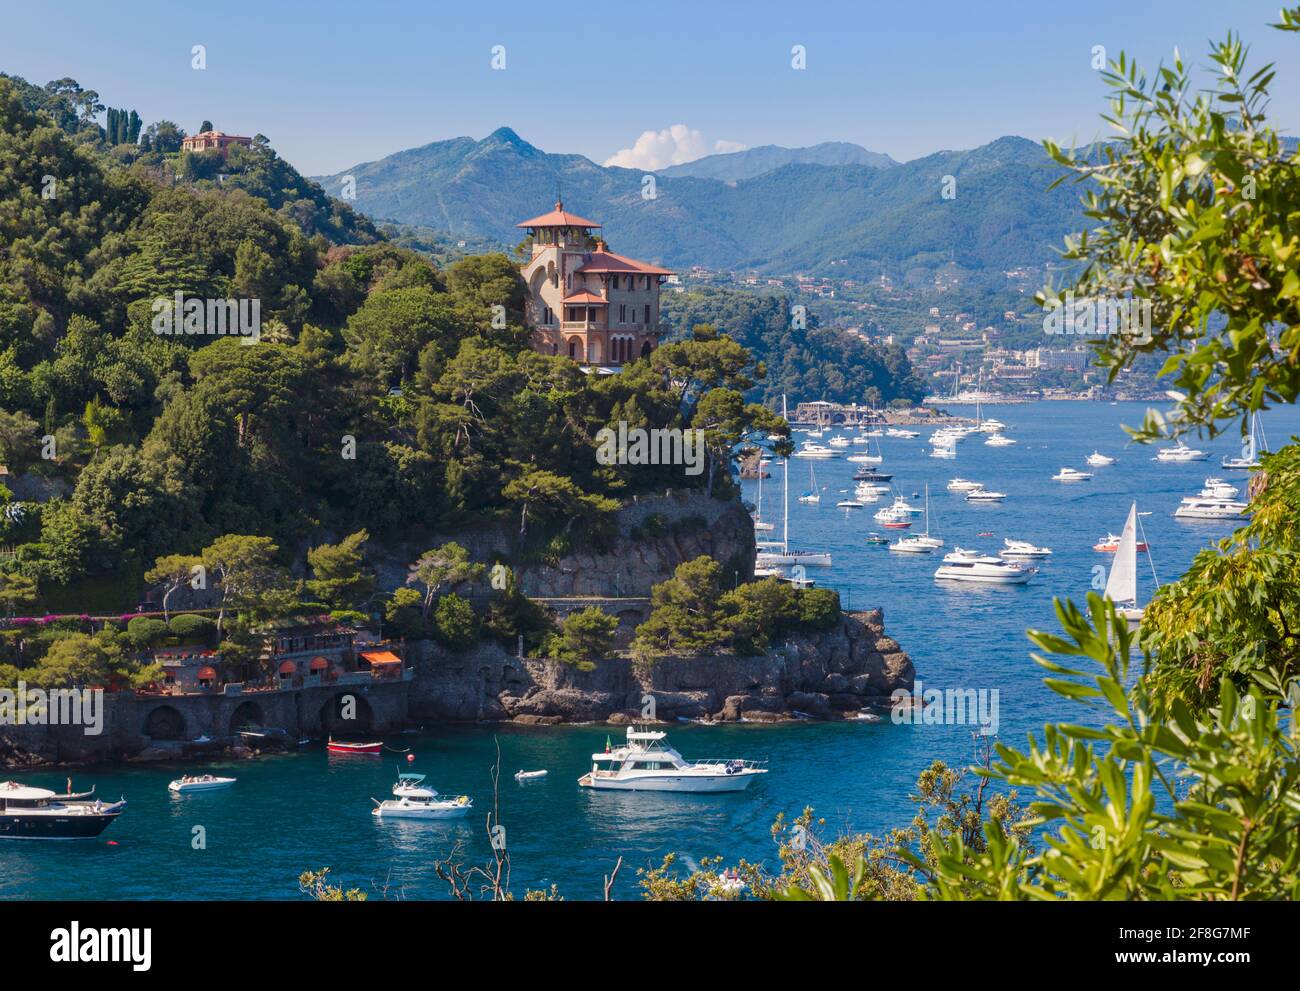 Portofino, Provincia di Genova, Riviera Italiana, Italia. Guardando dall'ingresso al porto di Portofino attraverso il Golfo del Tigullio in direzione di Santa M. Foto Stock